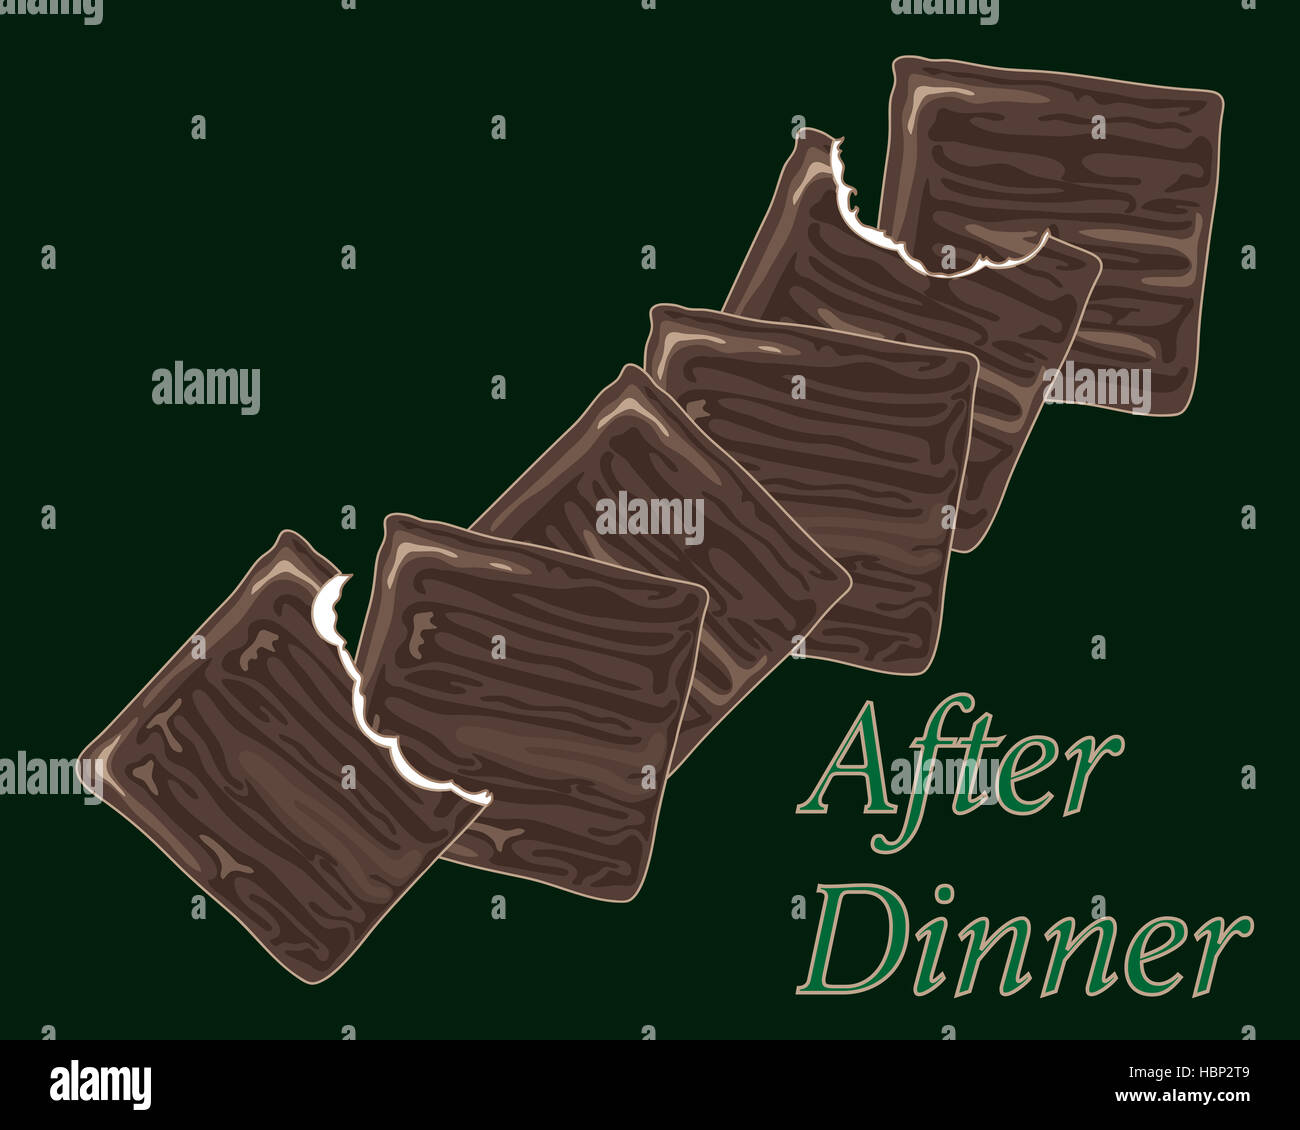 Une illustration de chocolat traditionnel après le dîner, les menthes minces en les piquant sur un fond vert foncé Banque D'Images